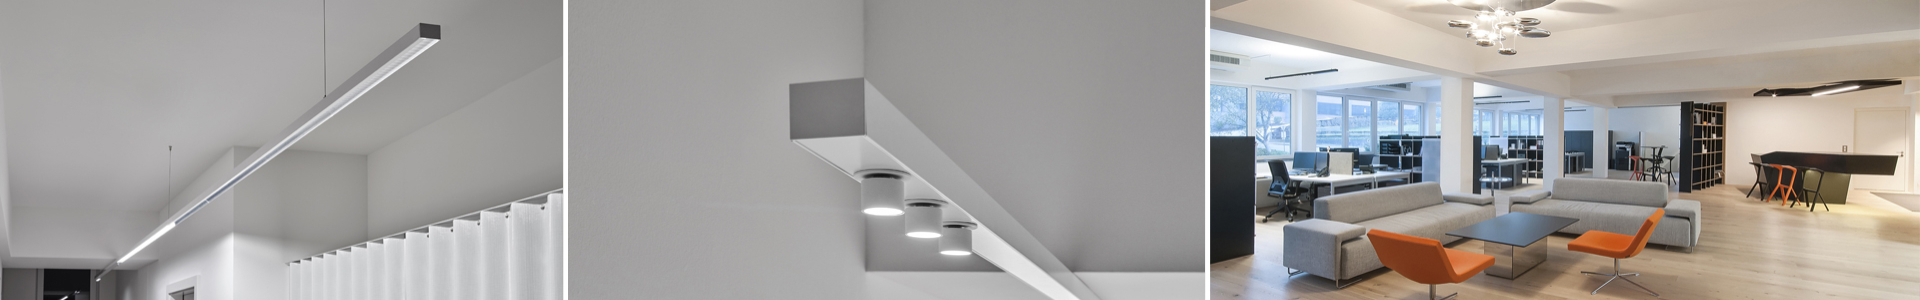 LED-Beleuchtung auf den Punkt, effizient und haltbar